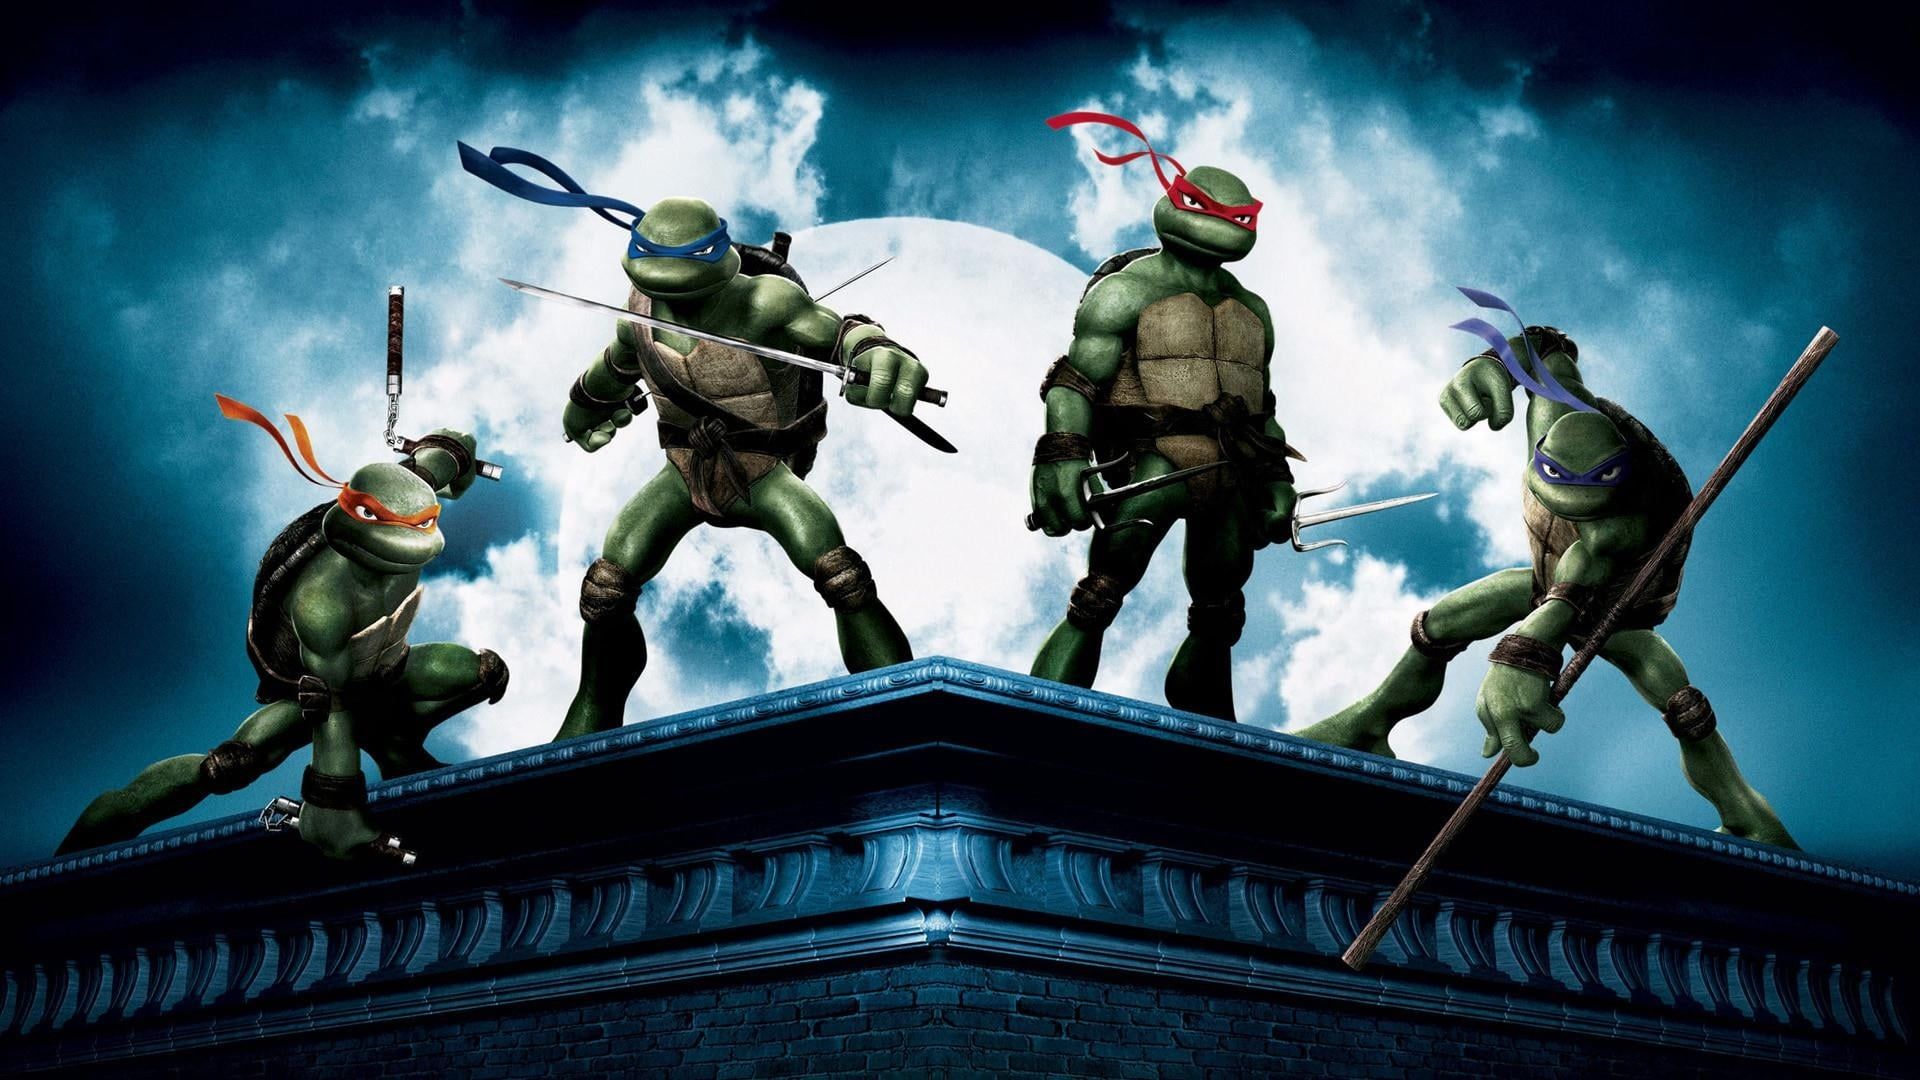 Cubierta de Tortugas Ninja jóvenes mutantes